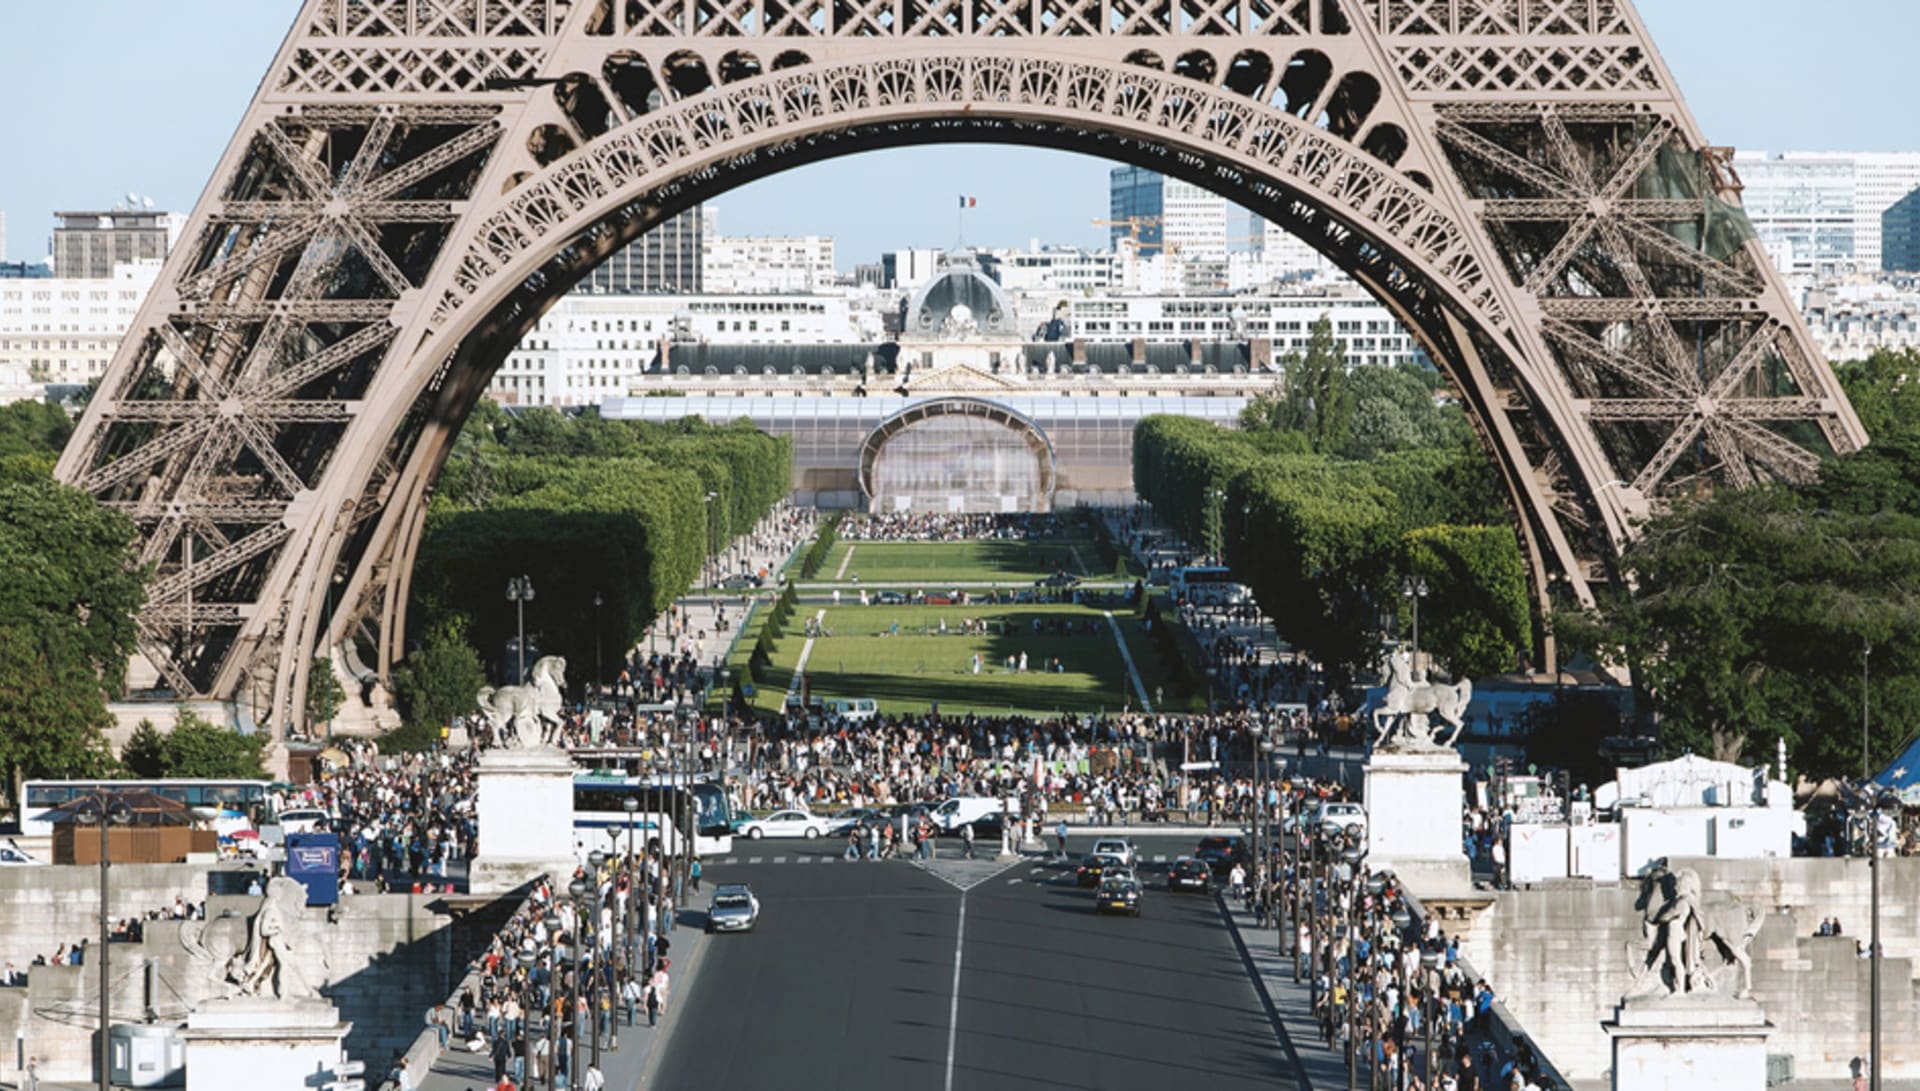 Architekt si přál, aby Pomíjivý palác kopíroval křivky Eiffelovy věže. 